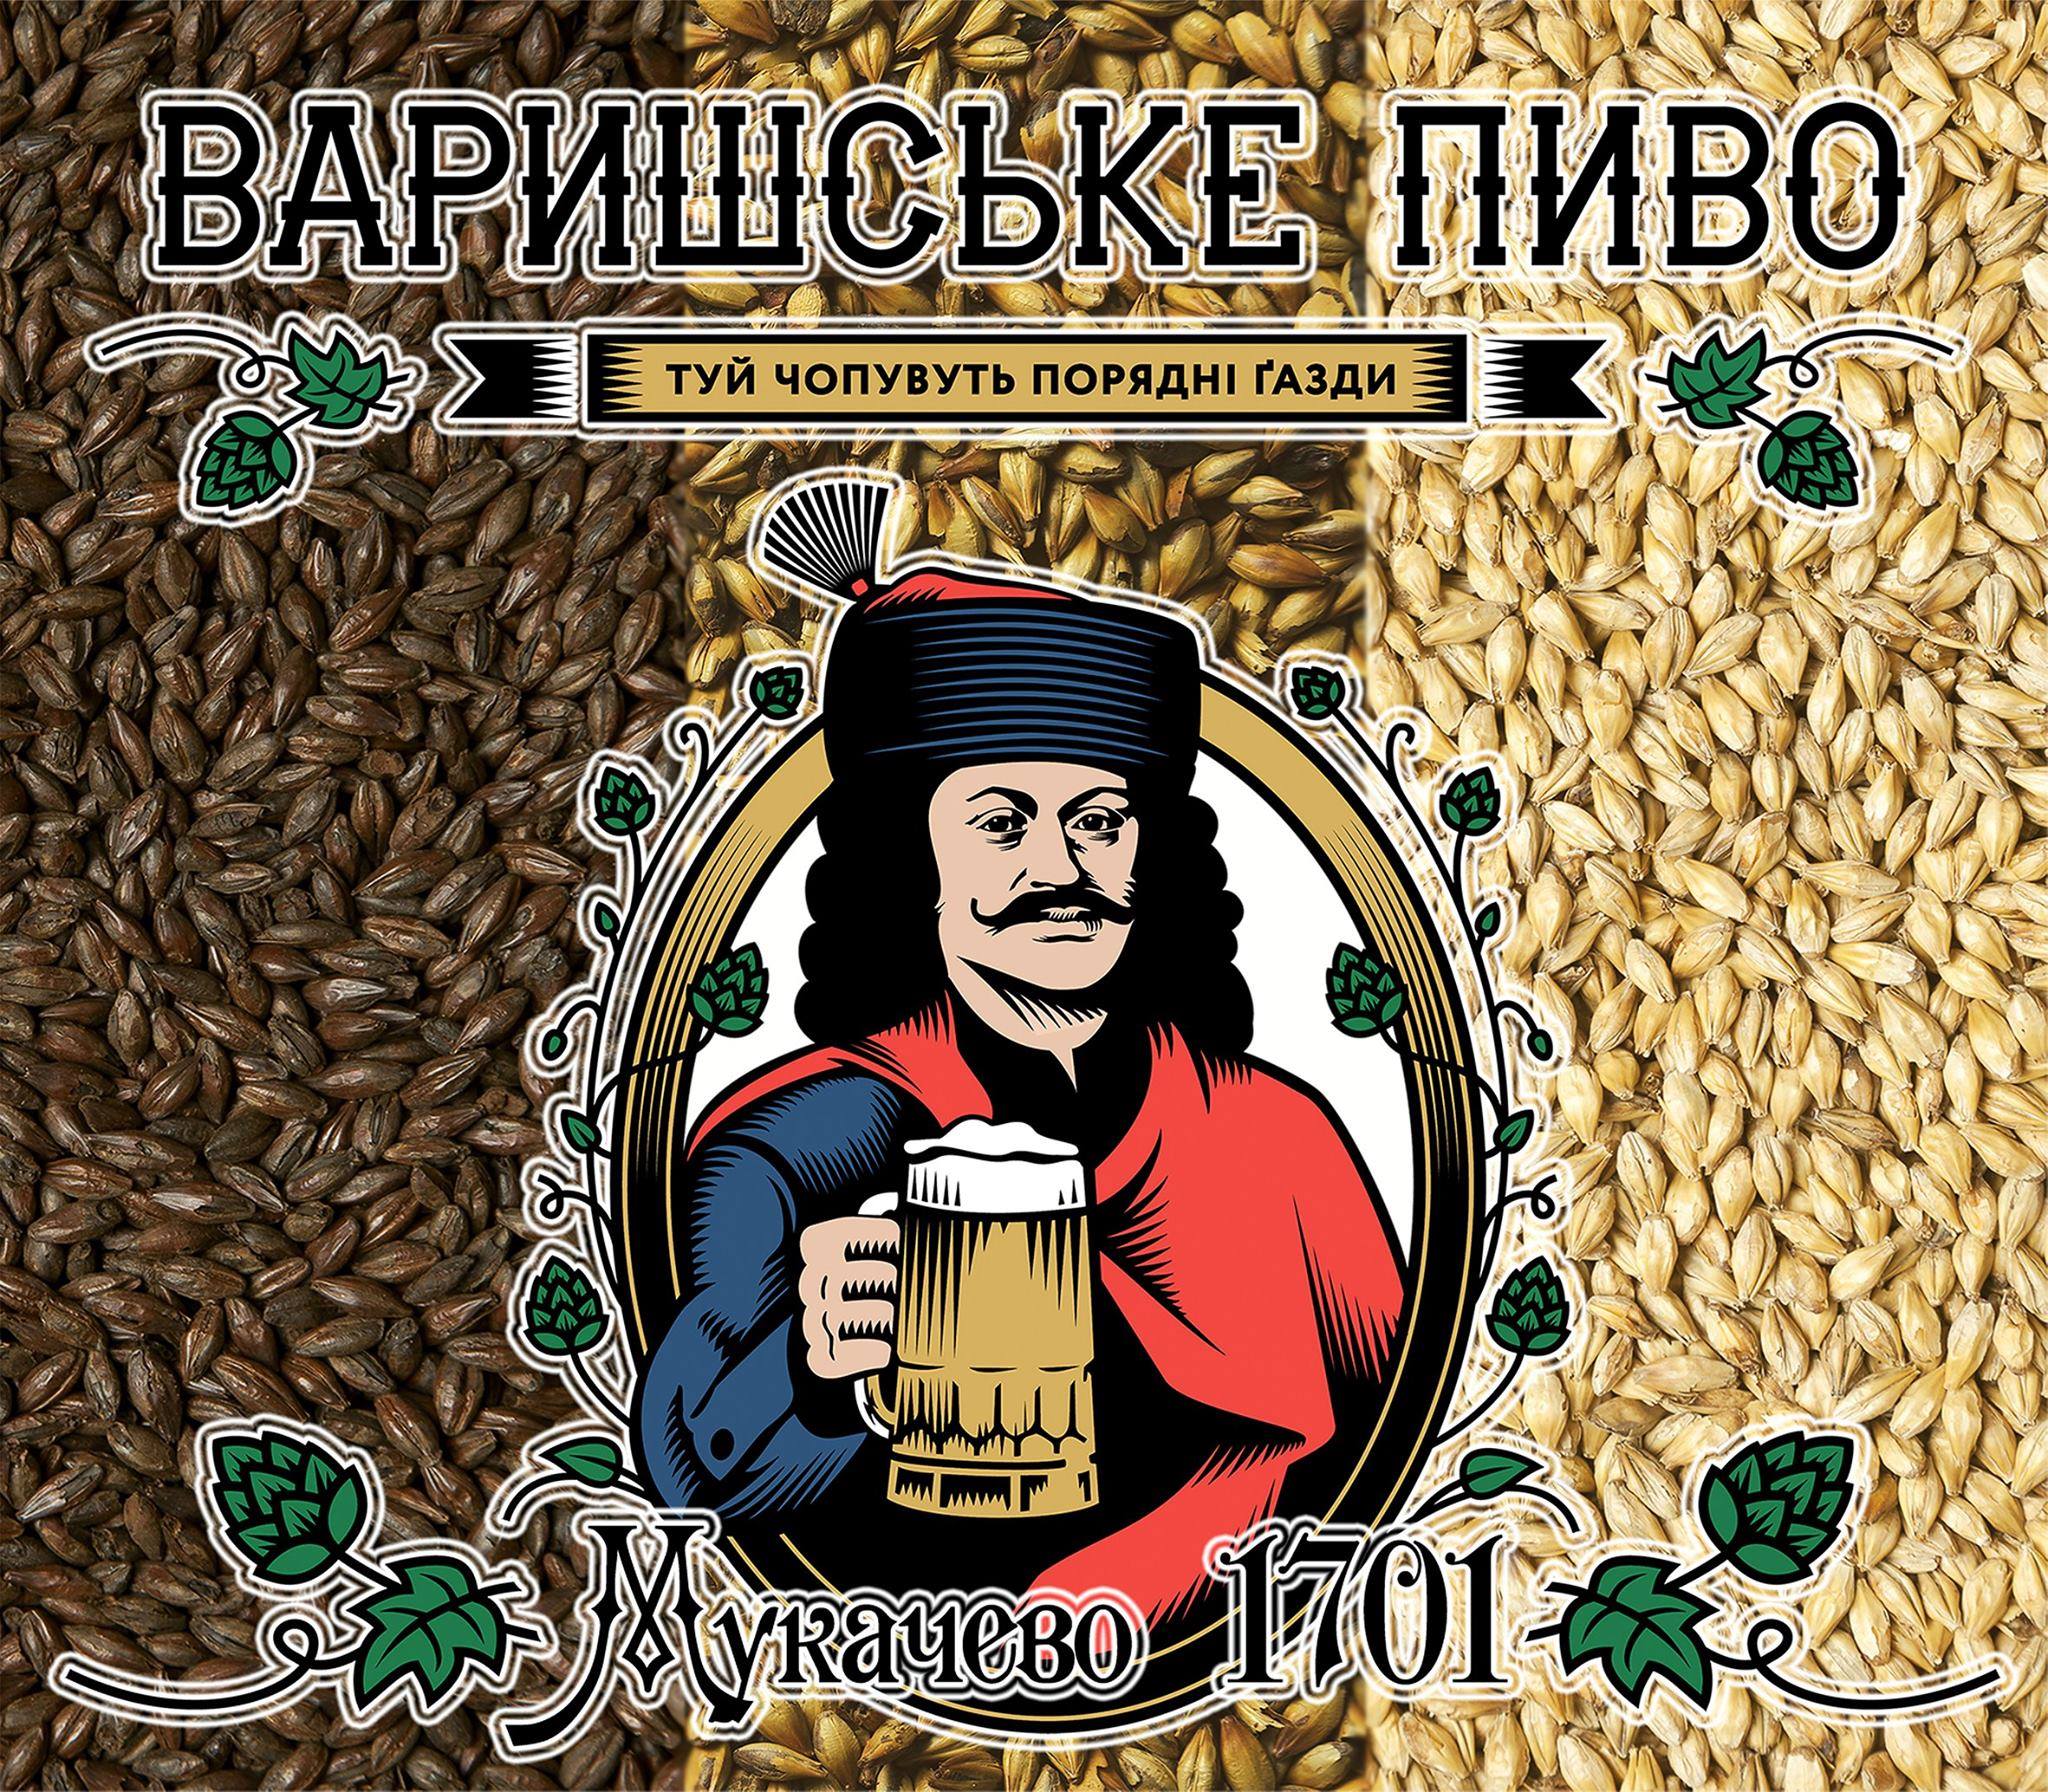 13-15 вересня в Мукачеві відбудеться ІV пивний фестиваль Закарпаття - 